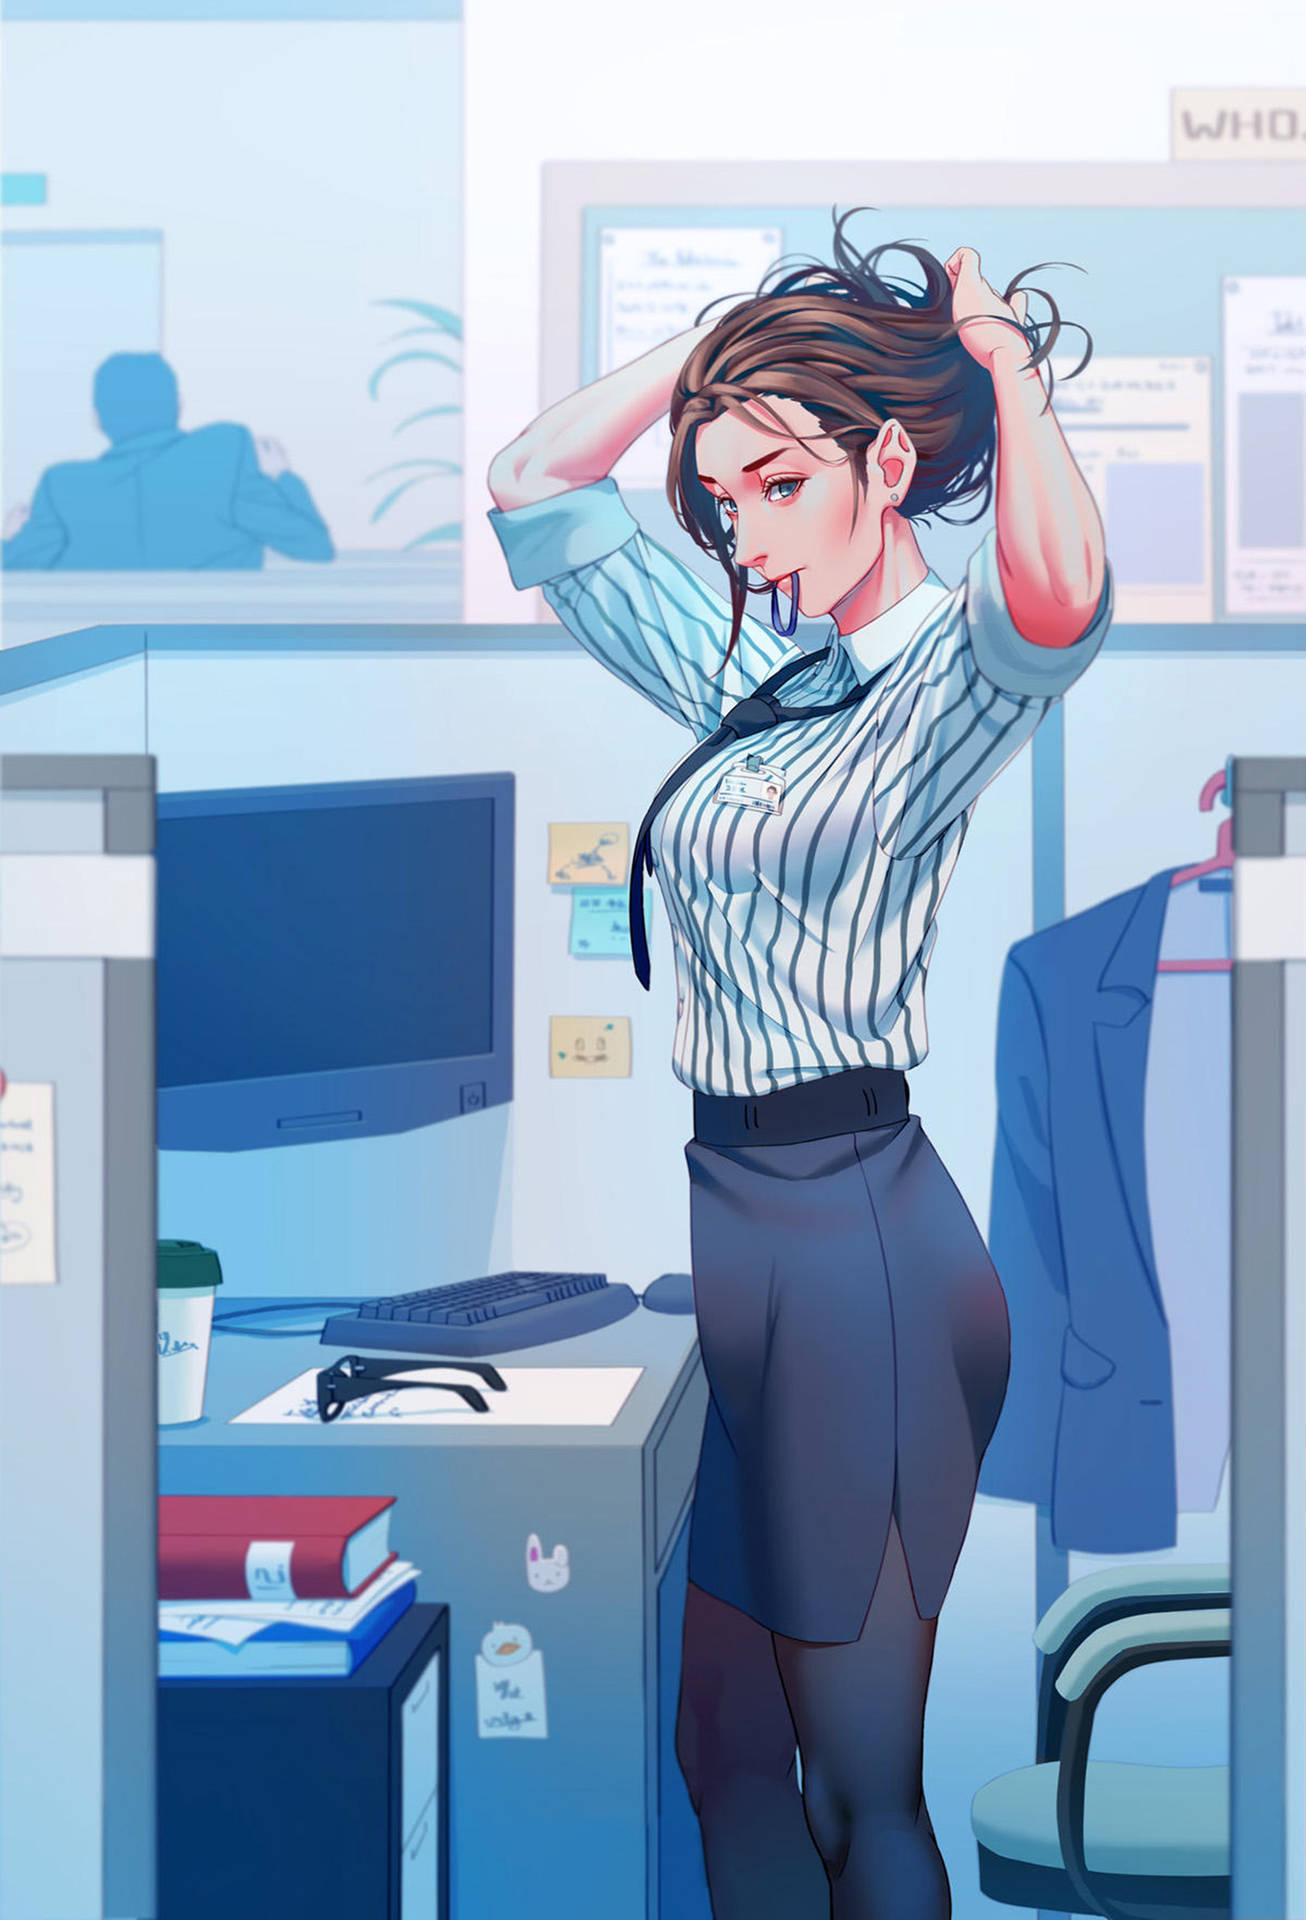 Anime Office Girl Artwork Wallpaper